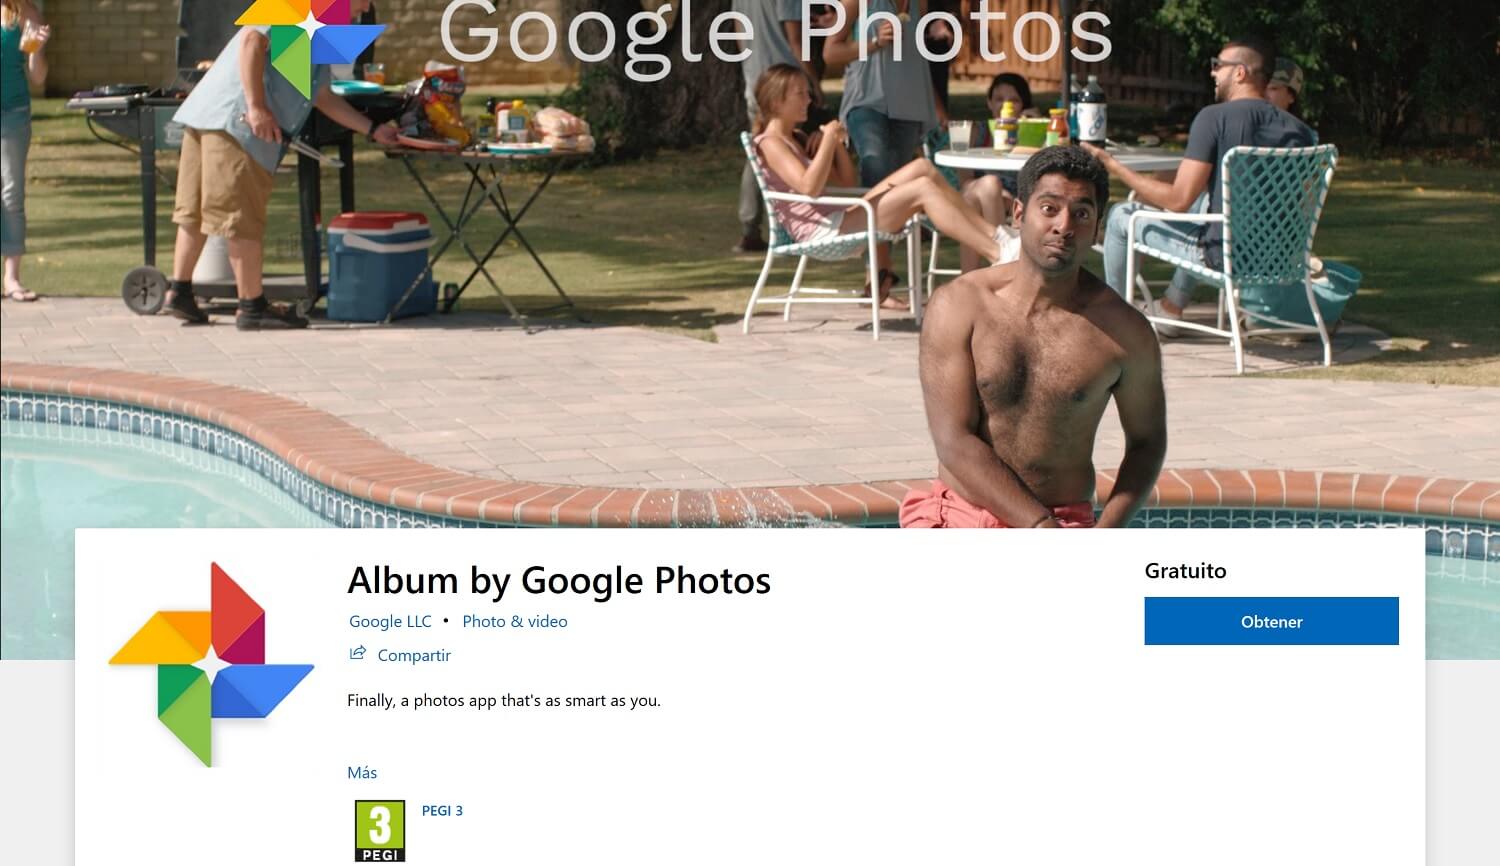 Posible nueva "Google Fake App" aparece en la tienda